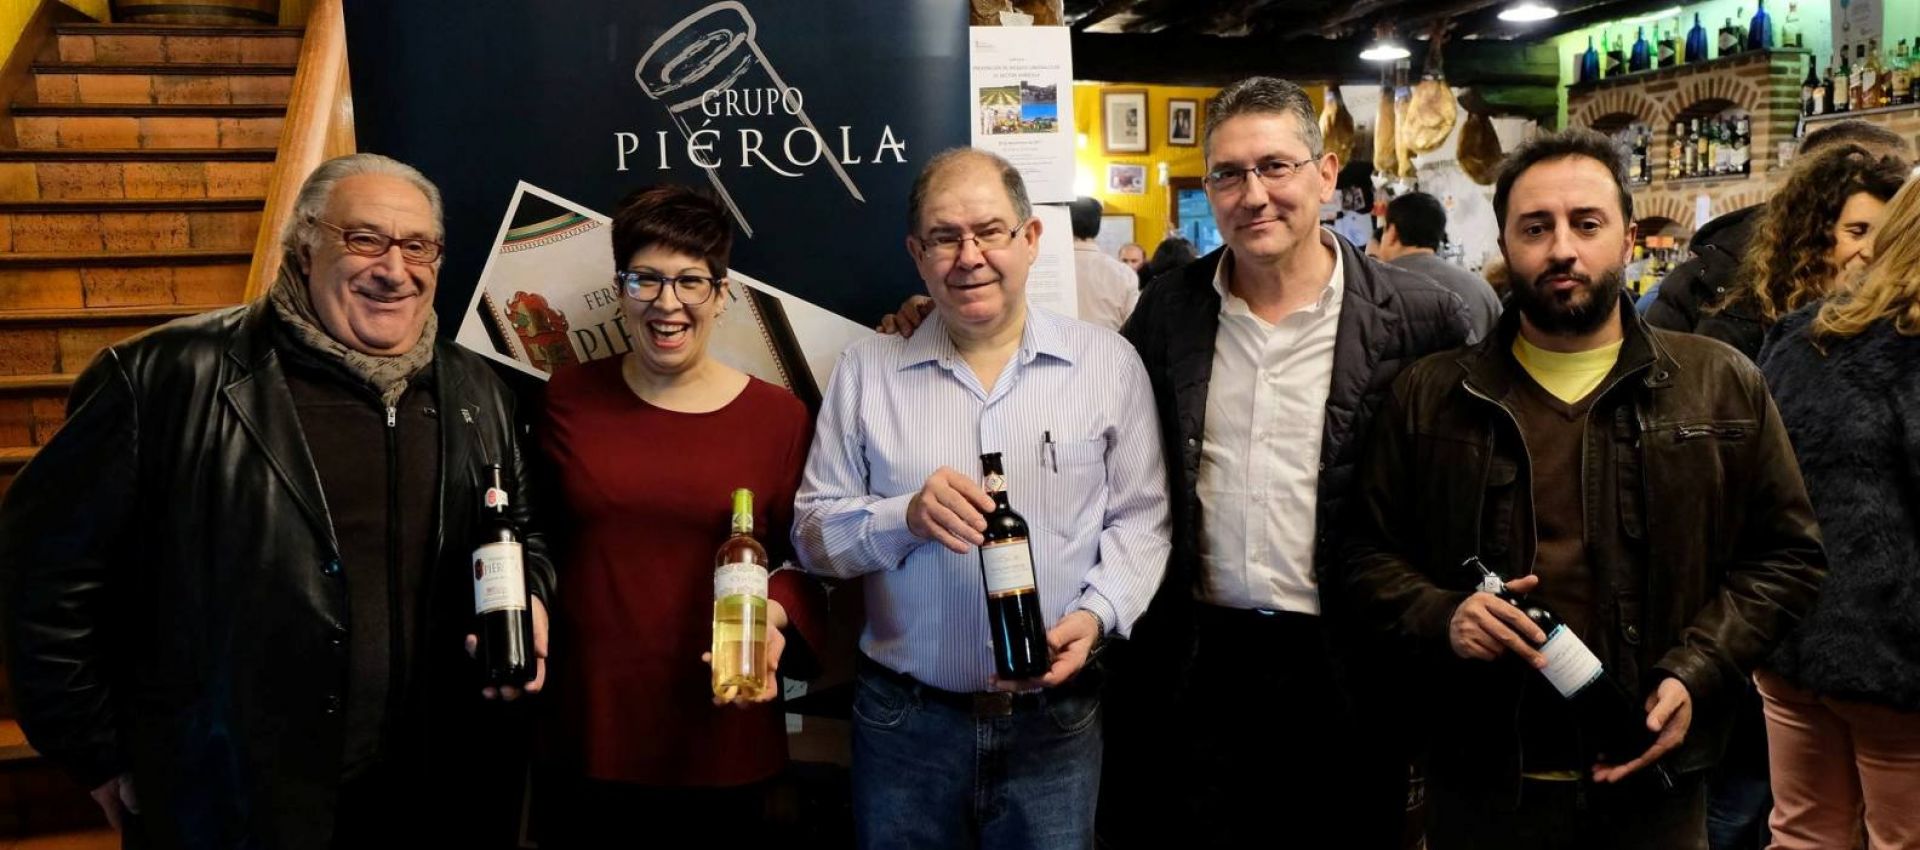 Photo for: Featuring Fernandez De Pierola Winery Based in Spain